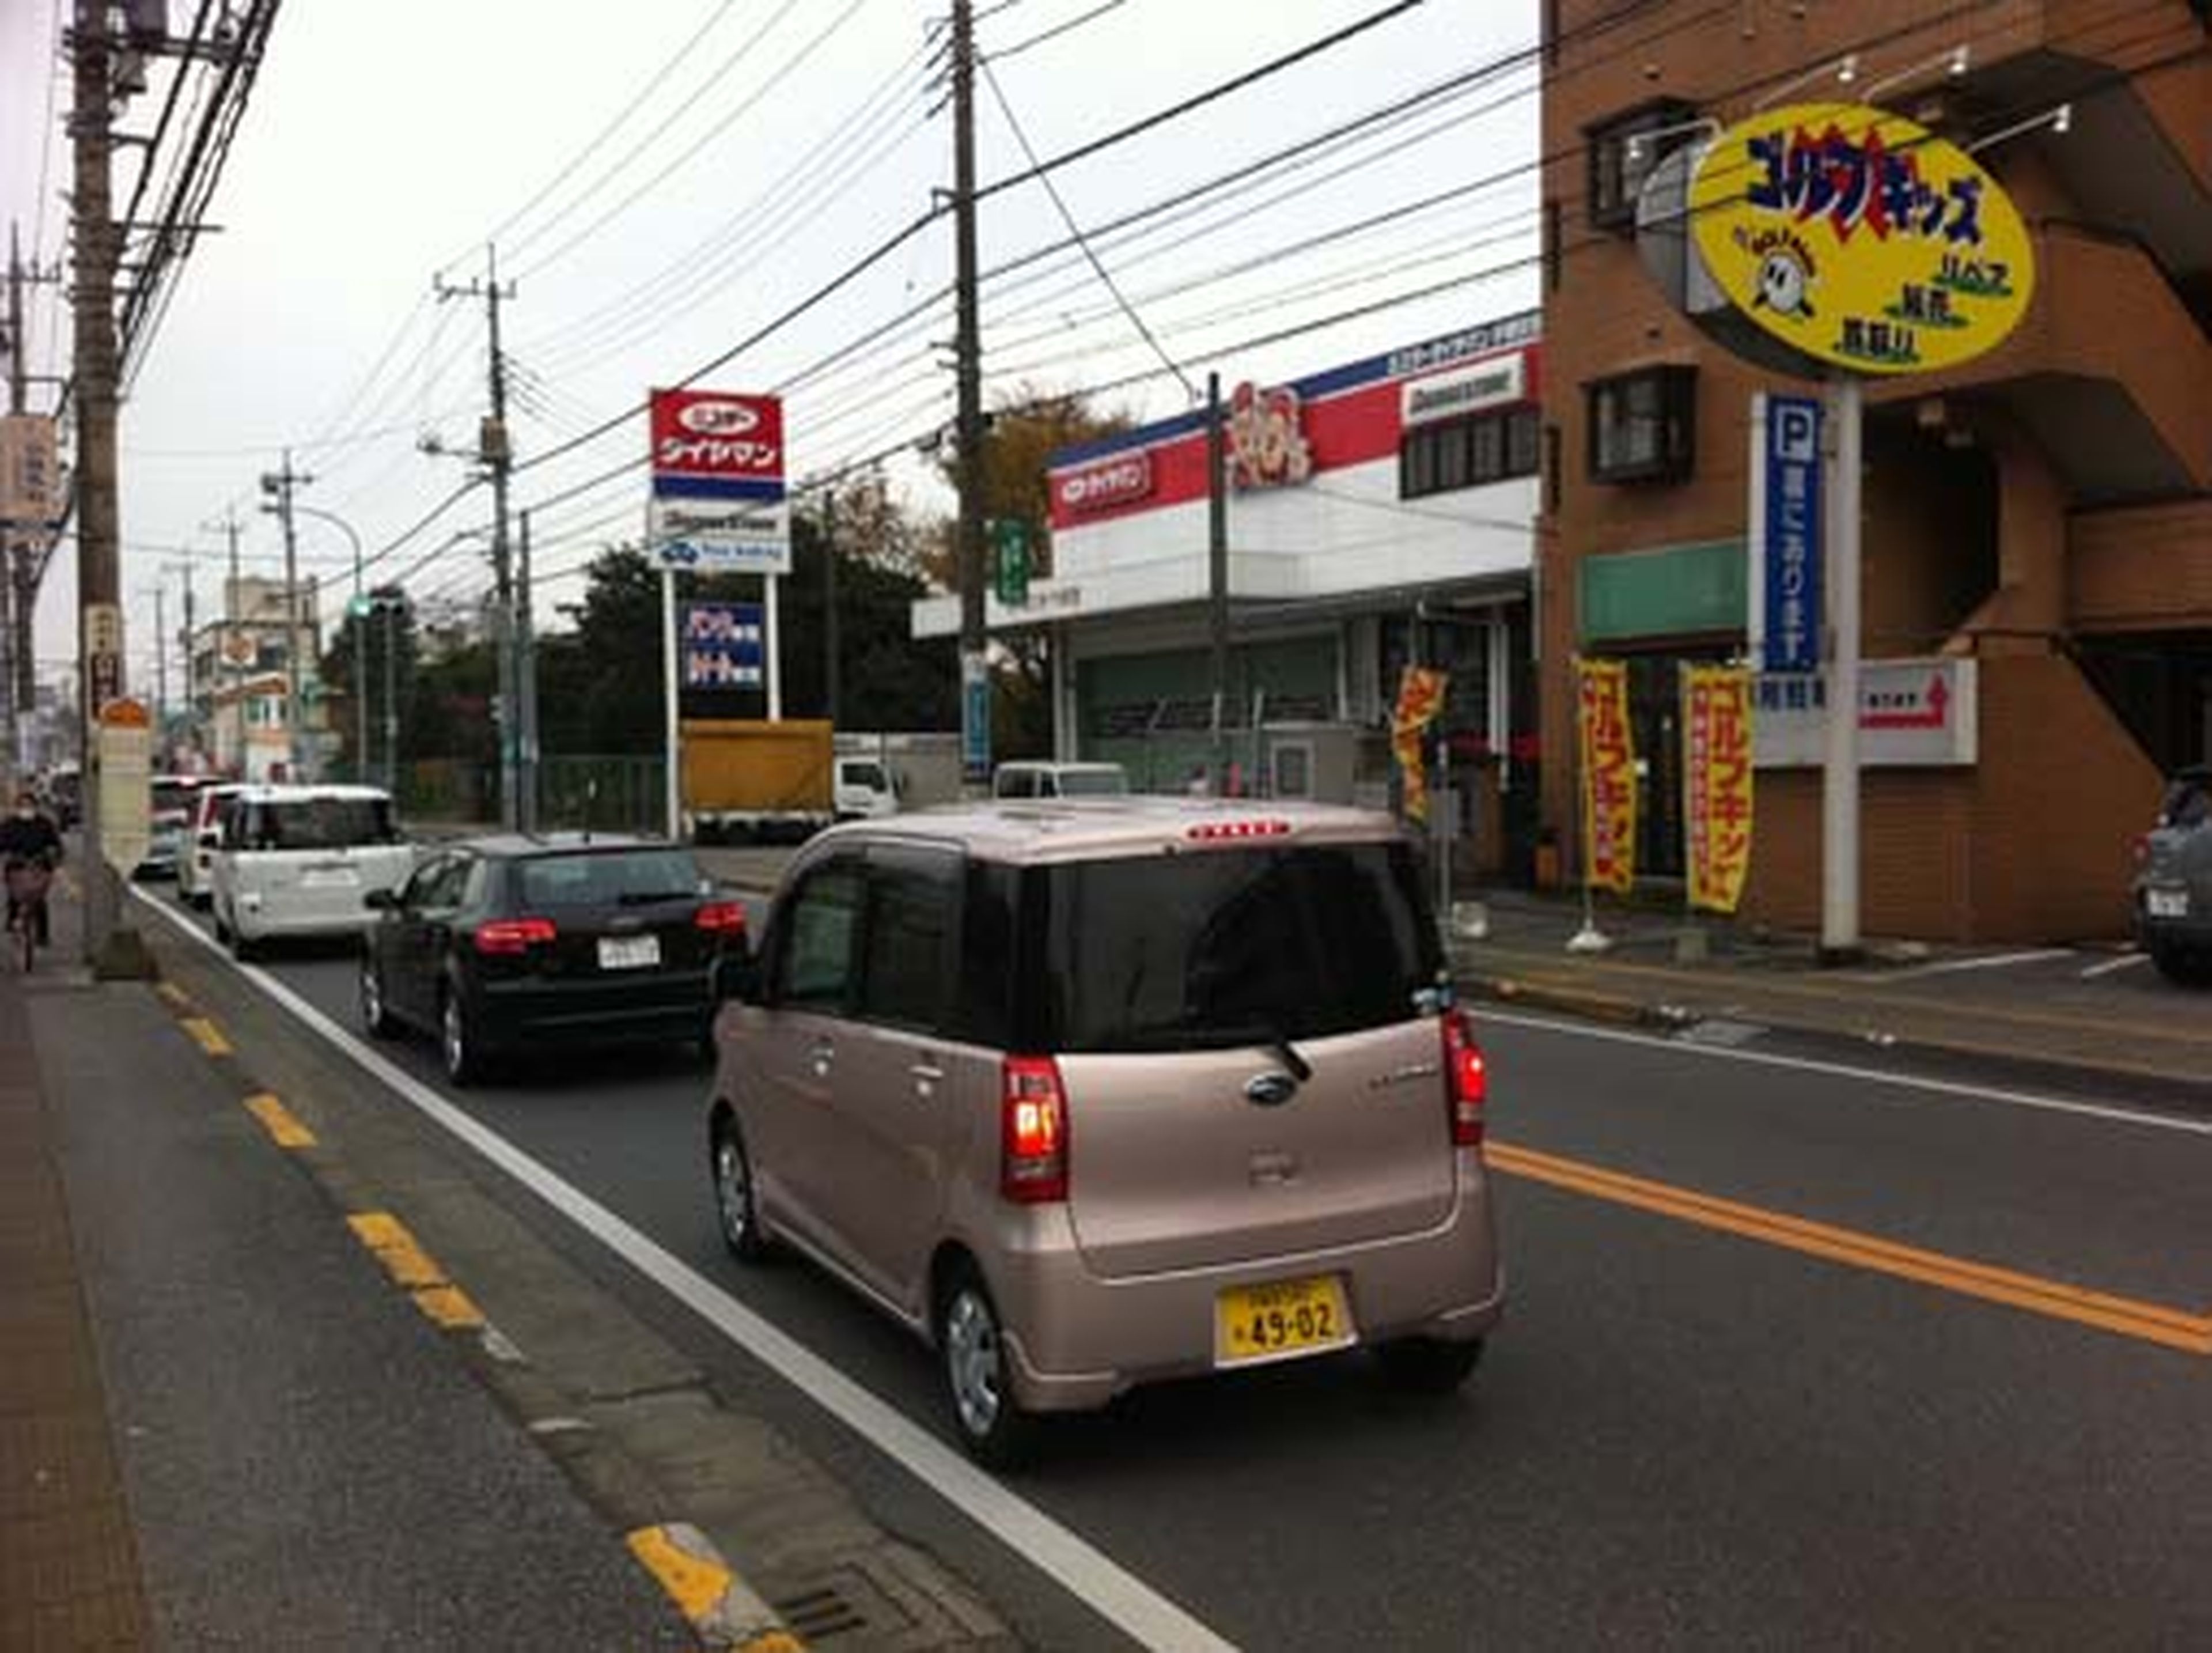 Crónicas (automovilísticas) desde Japón